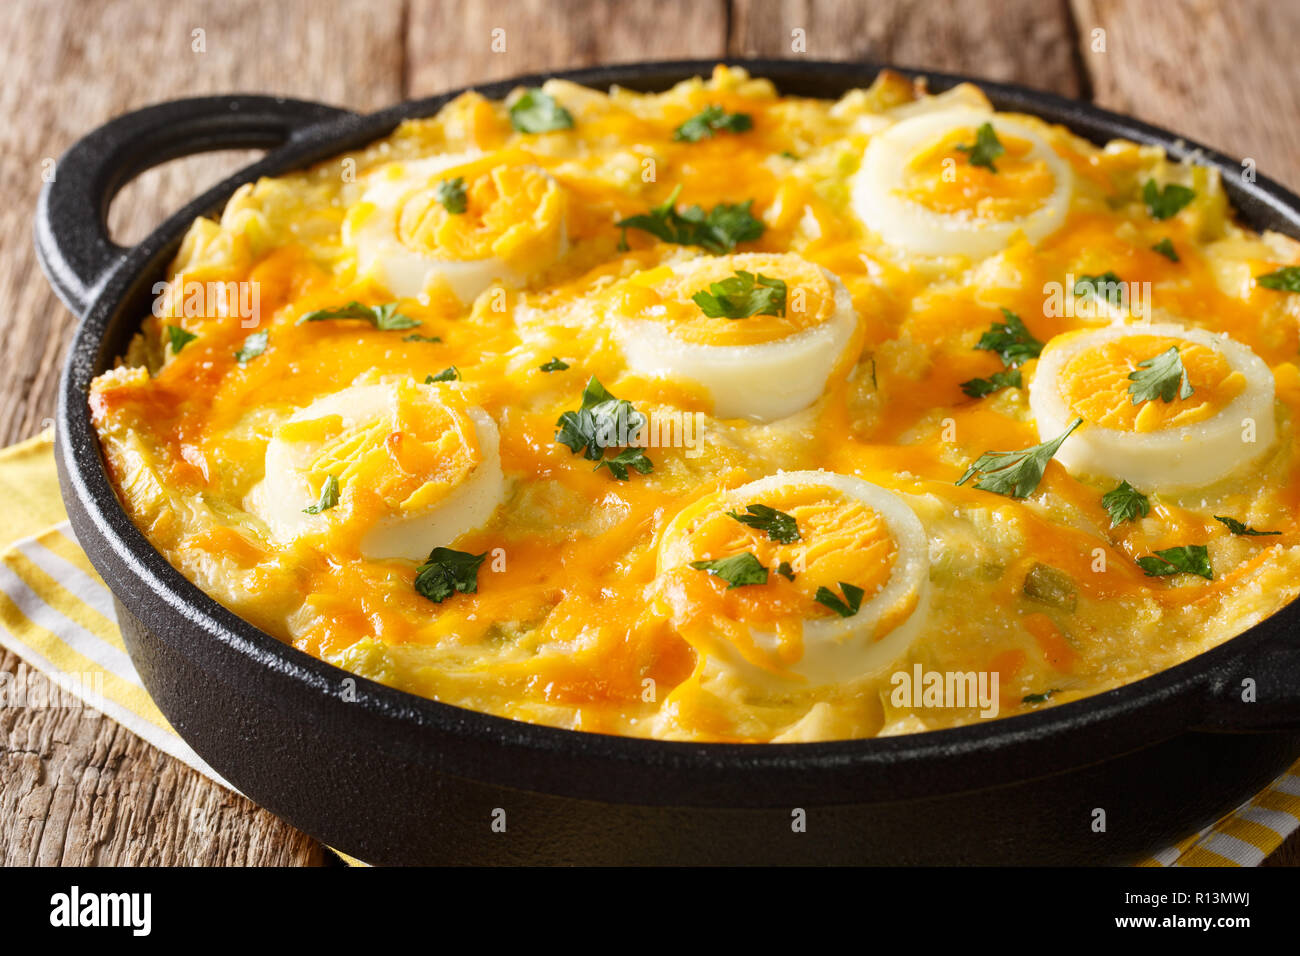 Authentische britische Essen. Anglesey Eier überbacken mit Kartoffelbrei, Lauch Käsesoße close-up auf dem Tisch. Horizontale Stockfoto